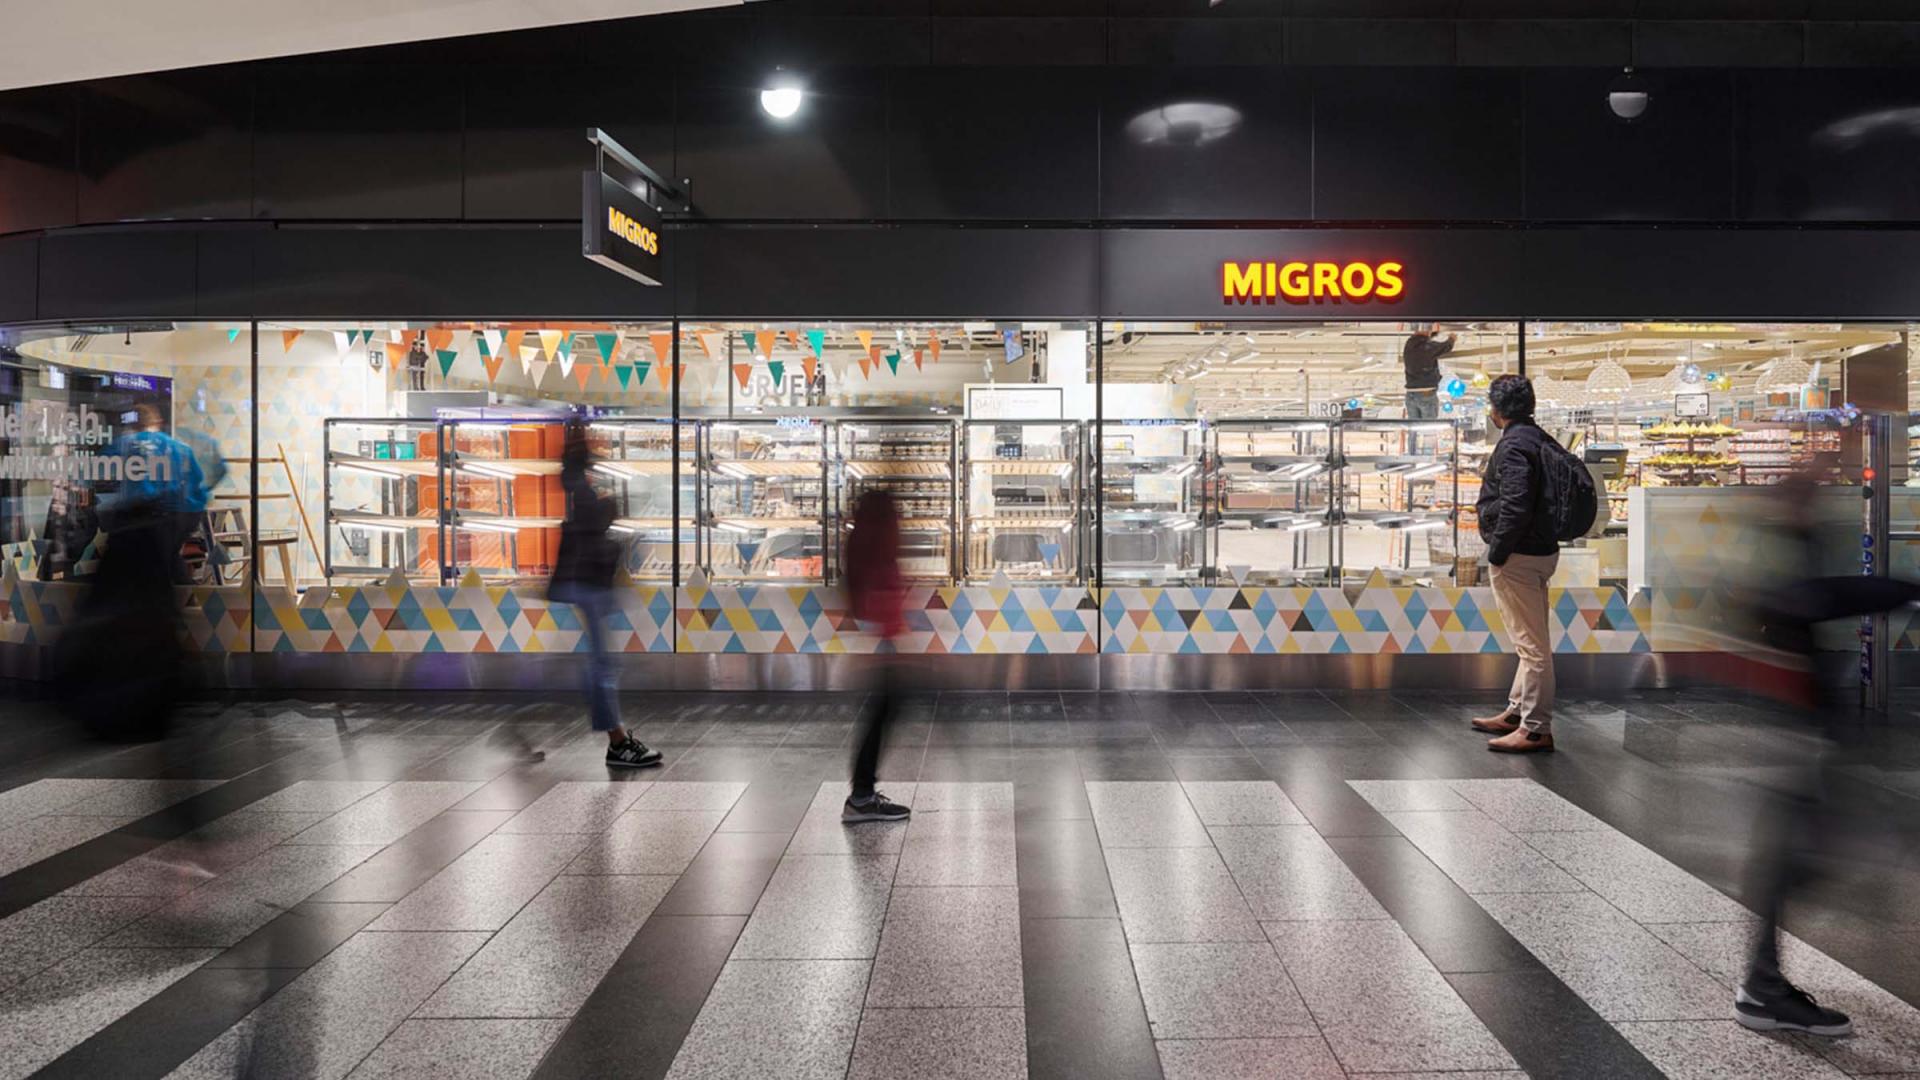 Neues Architekturkonzept für die Migros Filiale Hauptbahnhof Zürich